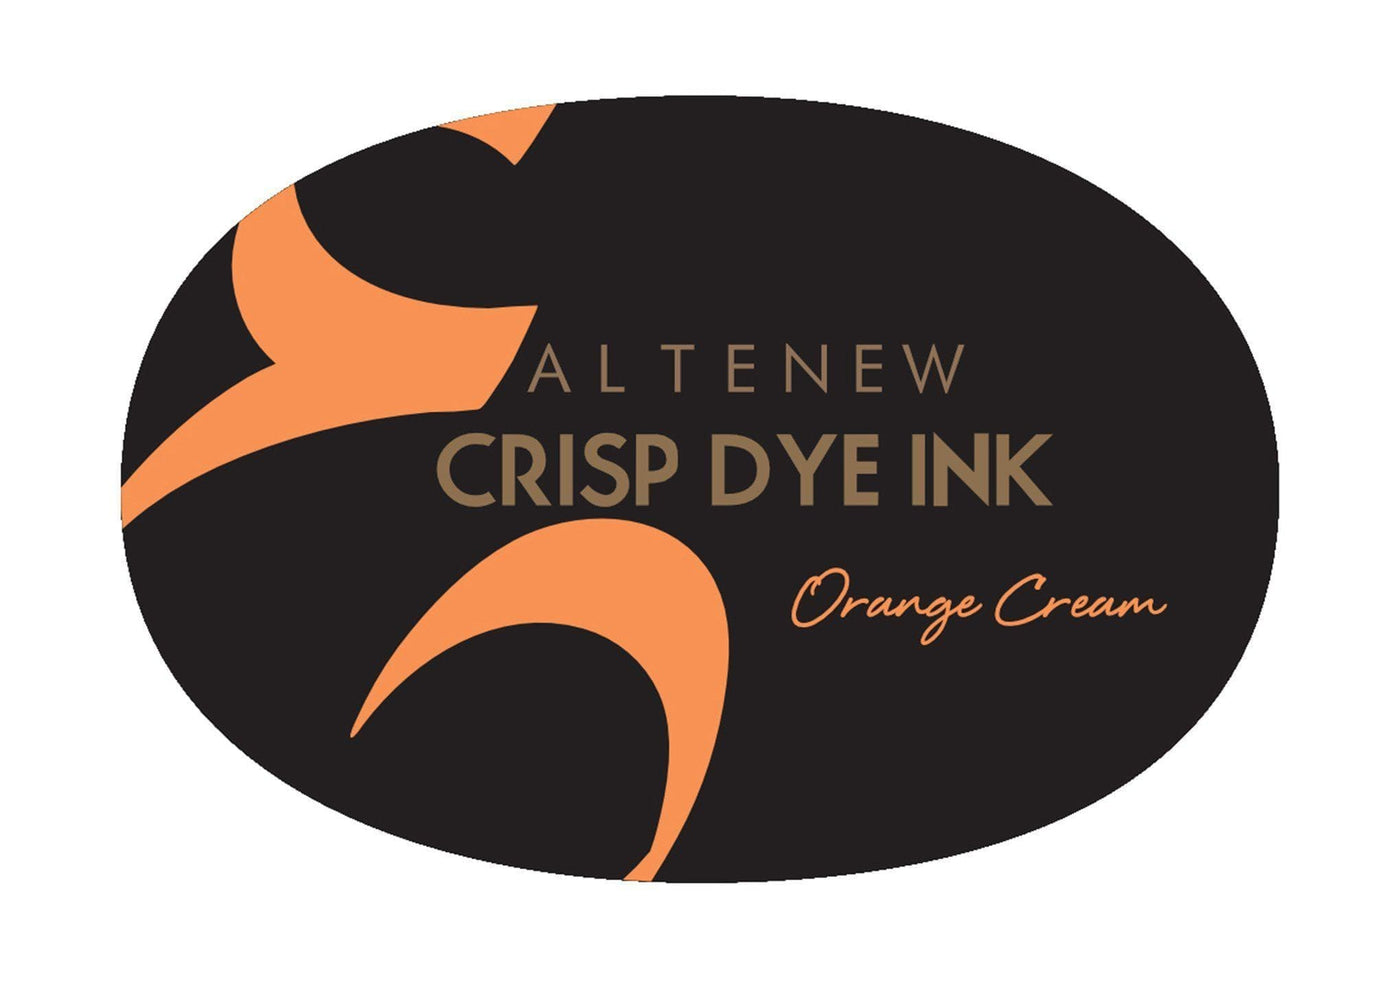 Stewart Superior Inks Orange Cream Crisp Dye Ink